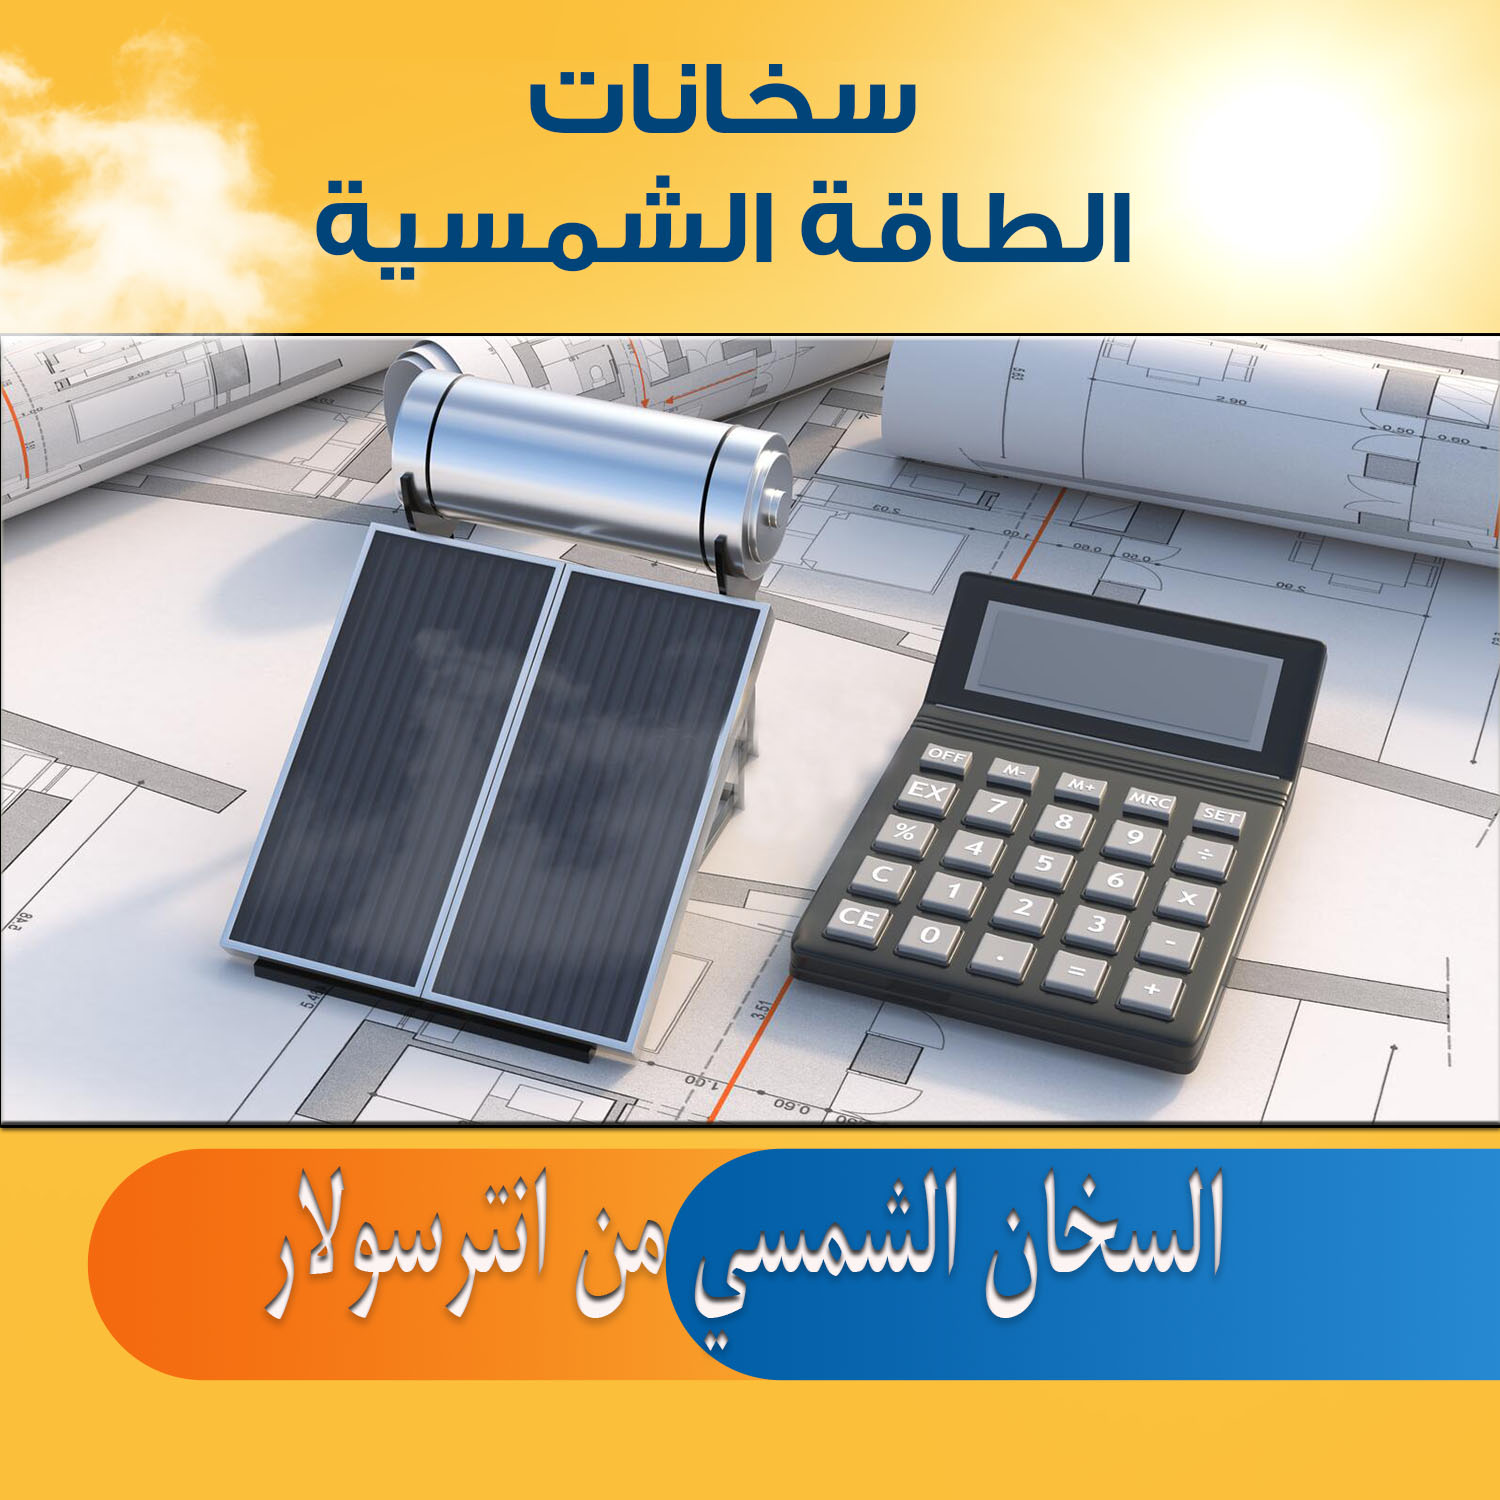 السخانات الشمسية واعتمادها في مصر من أكبر المكاتب الاستشارية